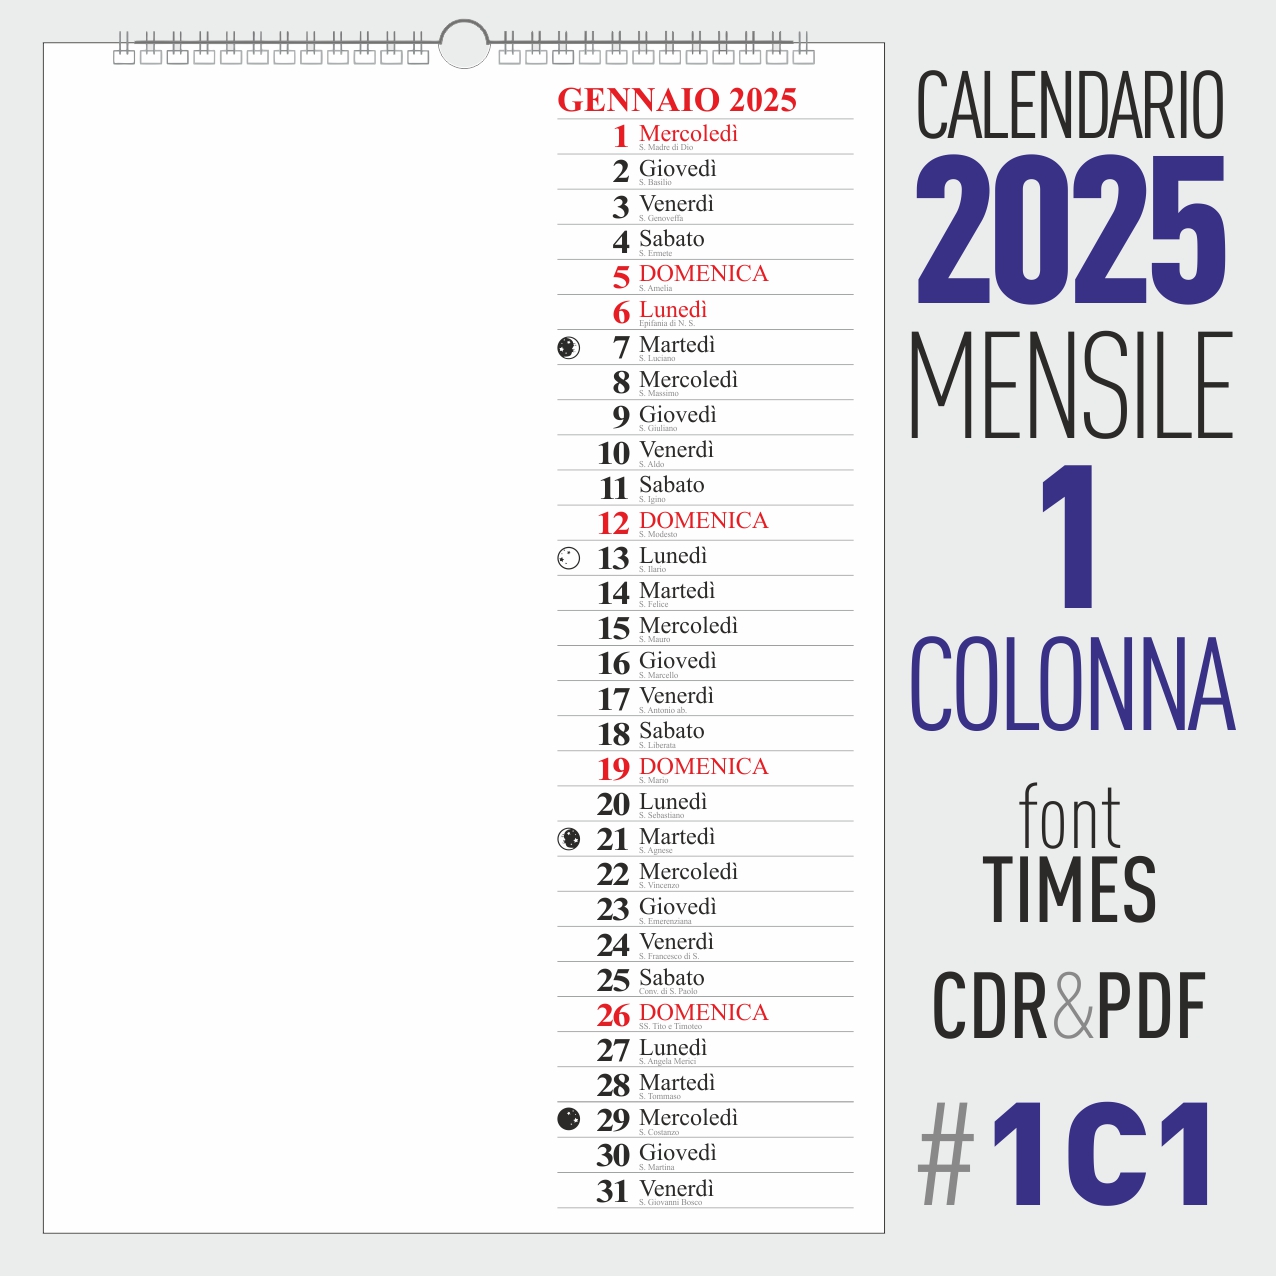 calendario 2025 mensile<br />
